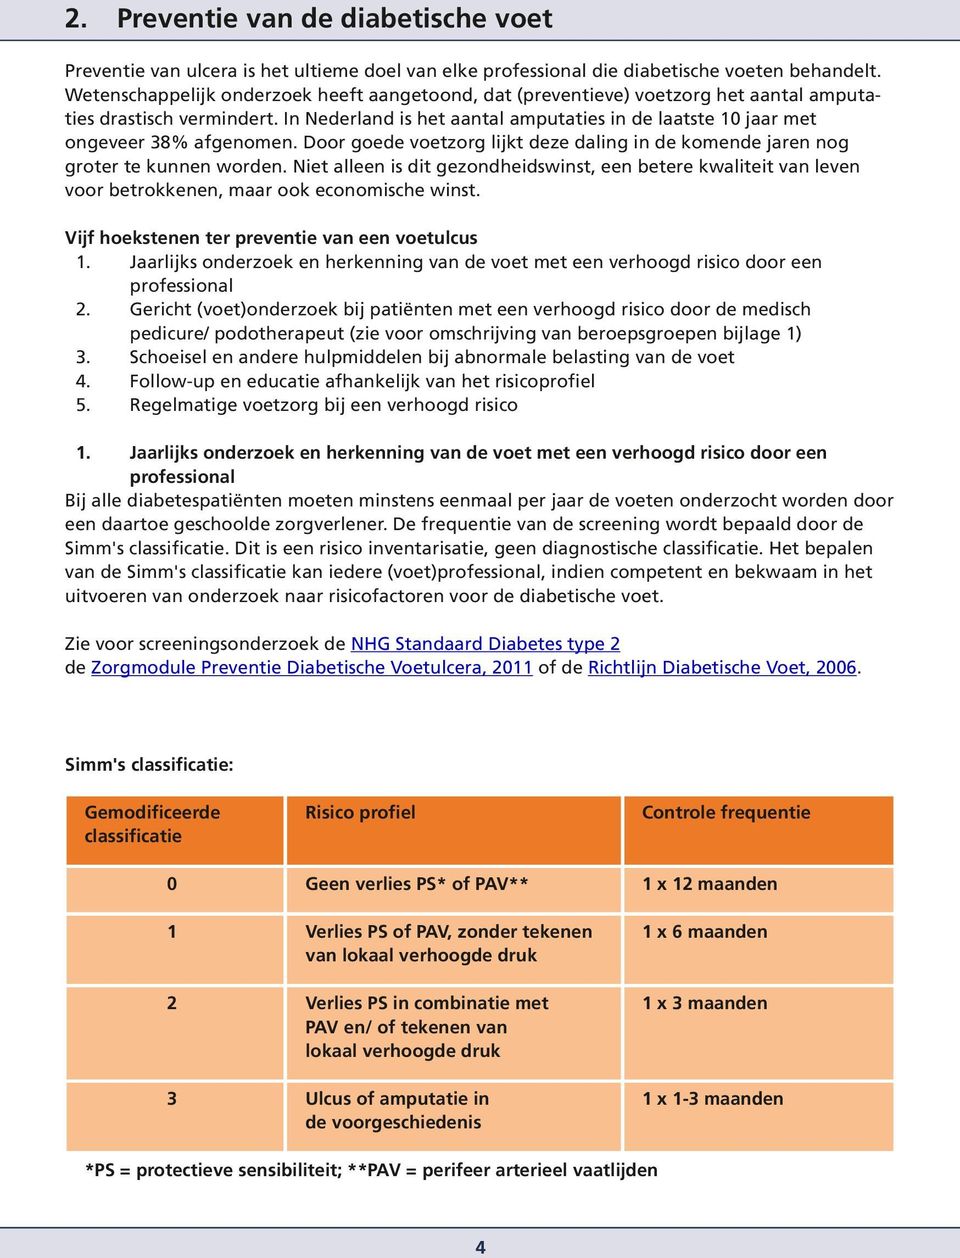 In Nederland is het aantal amputaties in de laatste 10 jaar met ongeveer 38% afgenomen. Door goede voetzorg lijkt deze daling in de komende jaren nog groter te kunnen worden.